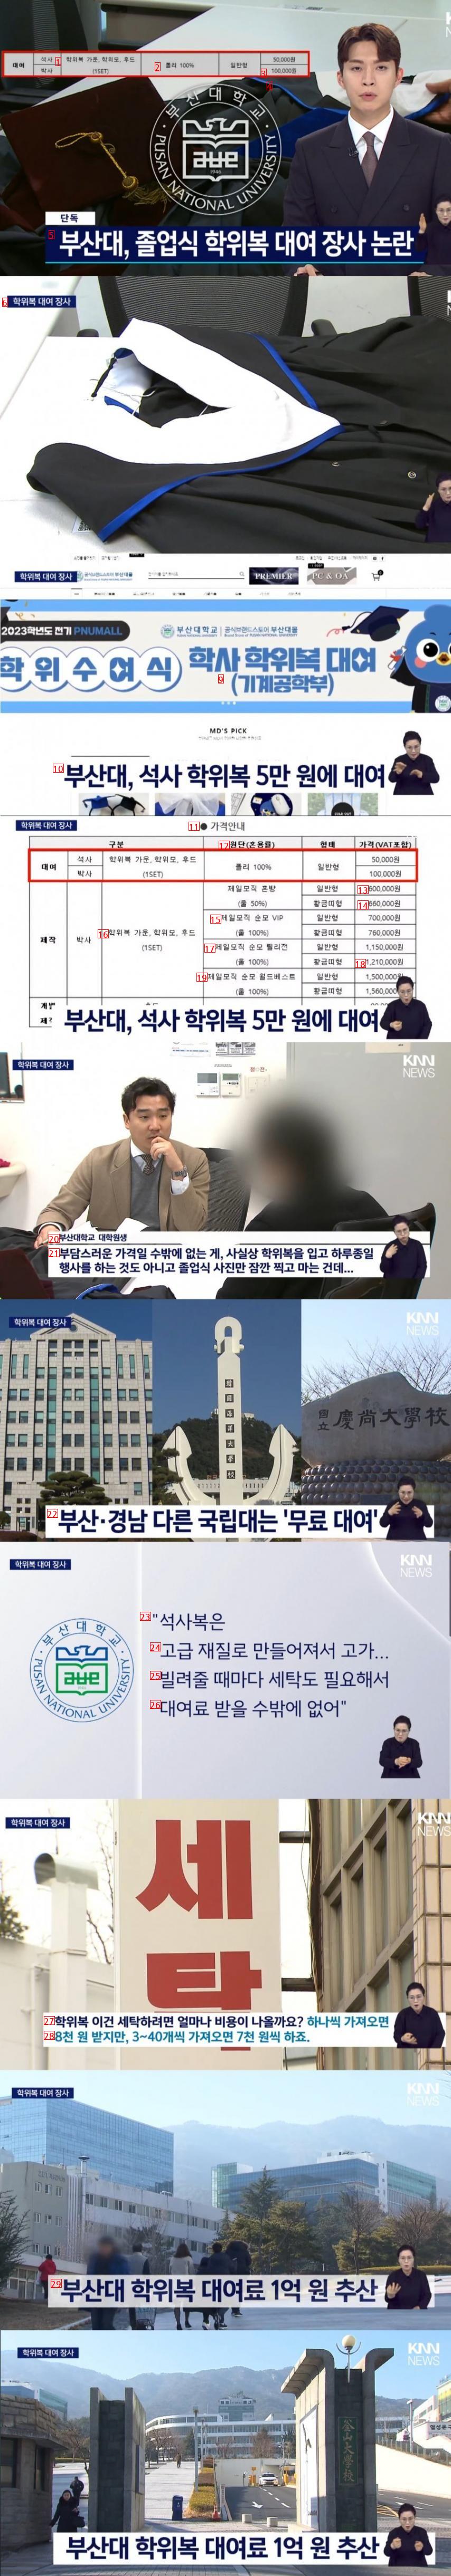 [단독] 부산대, 졸업식 학위복 대여 장사 논란